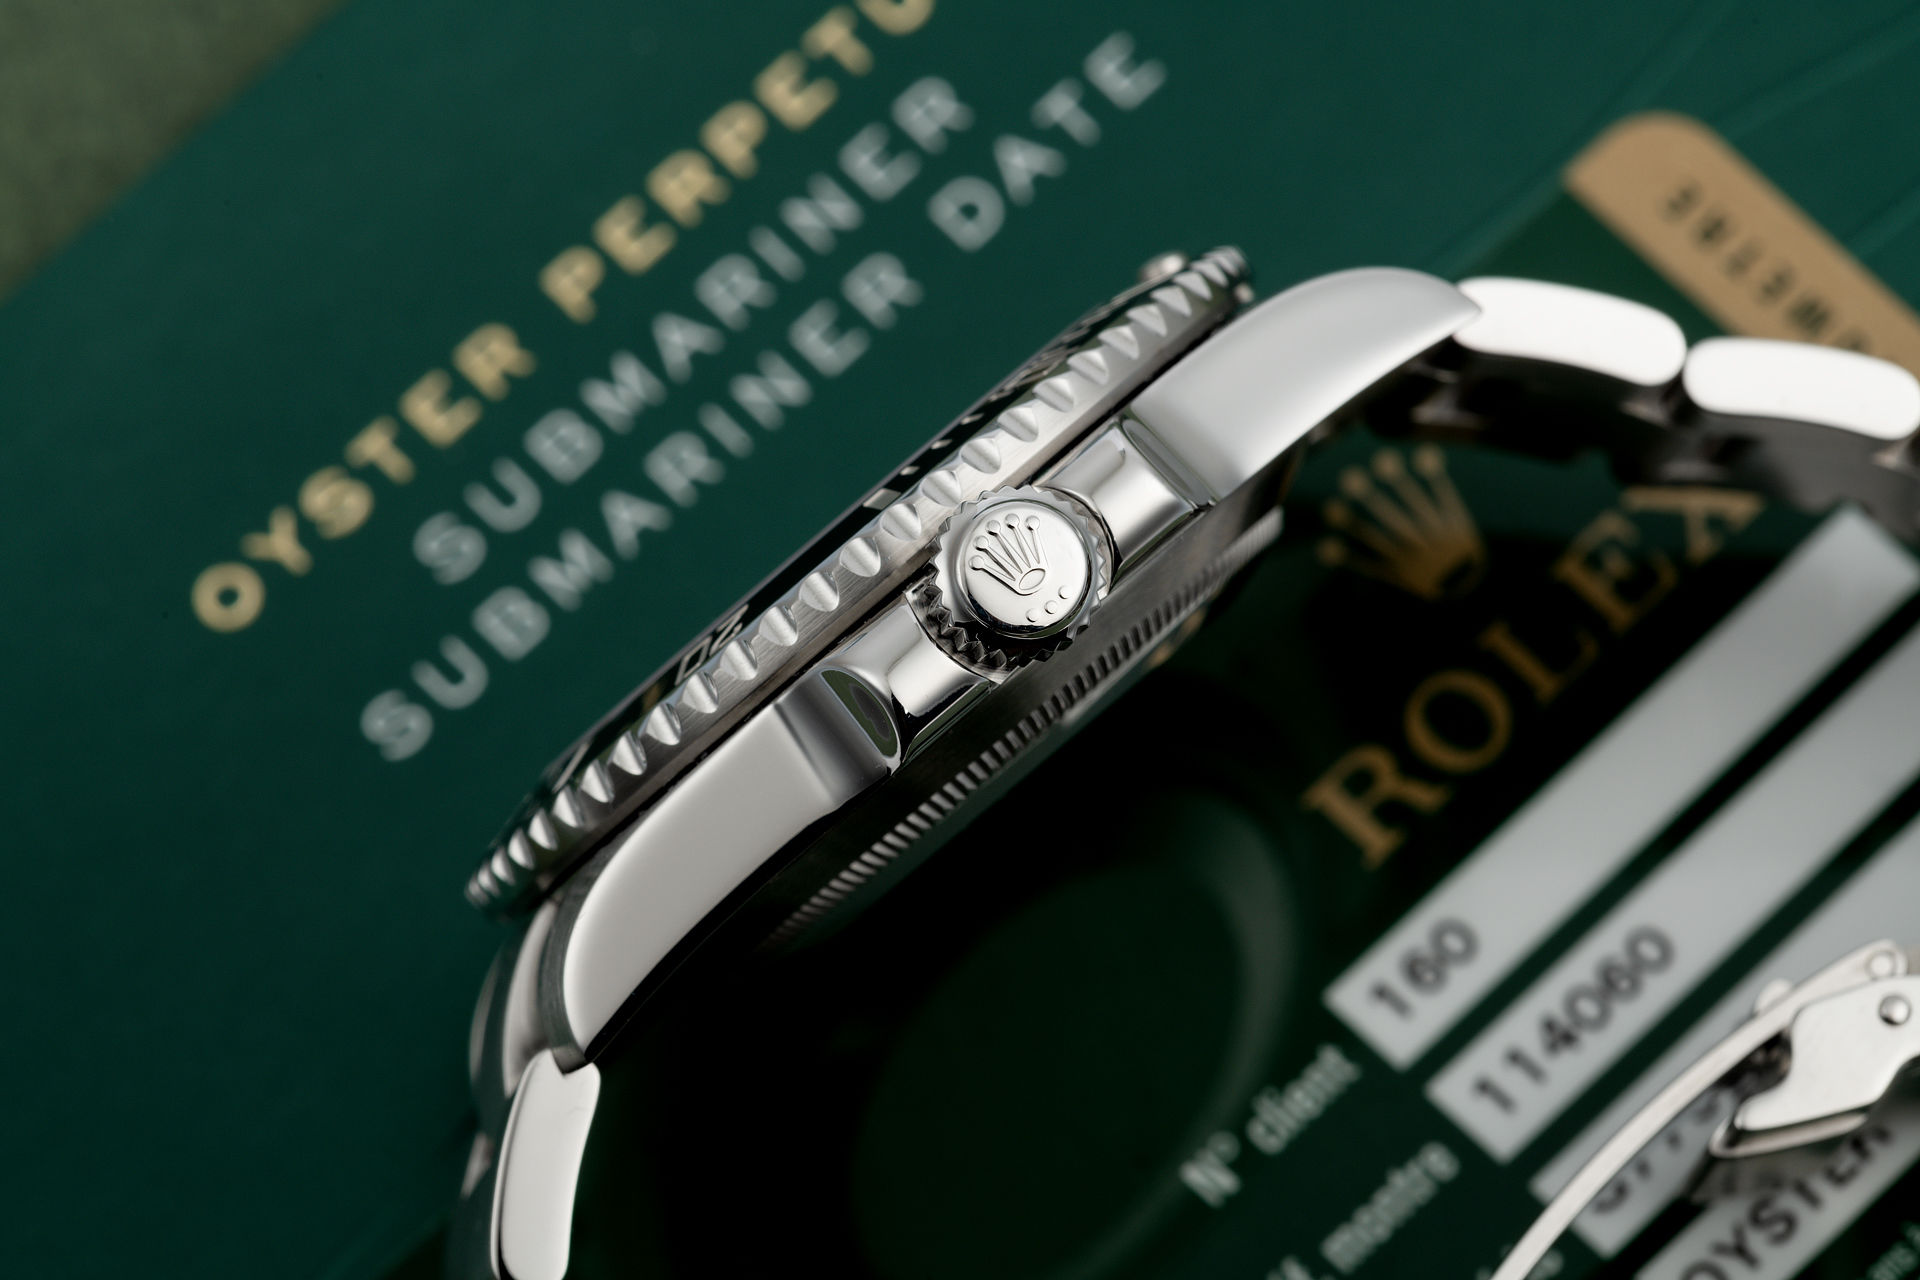 ref 114060 | Under Rolex Service Warranty  | Rolex Submariner 